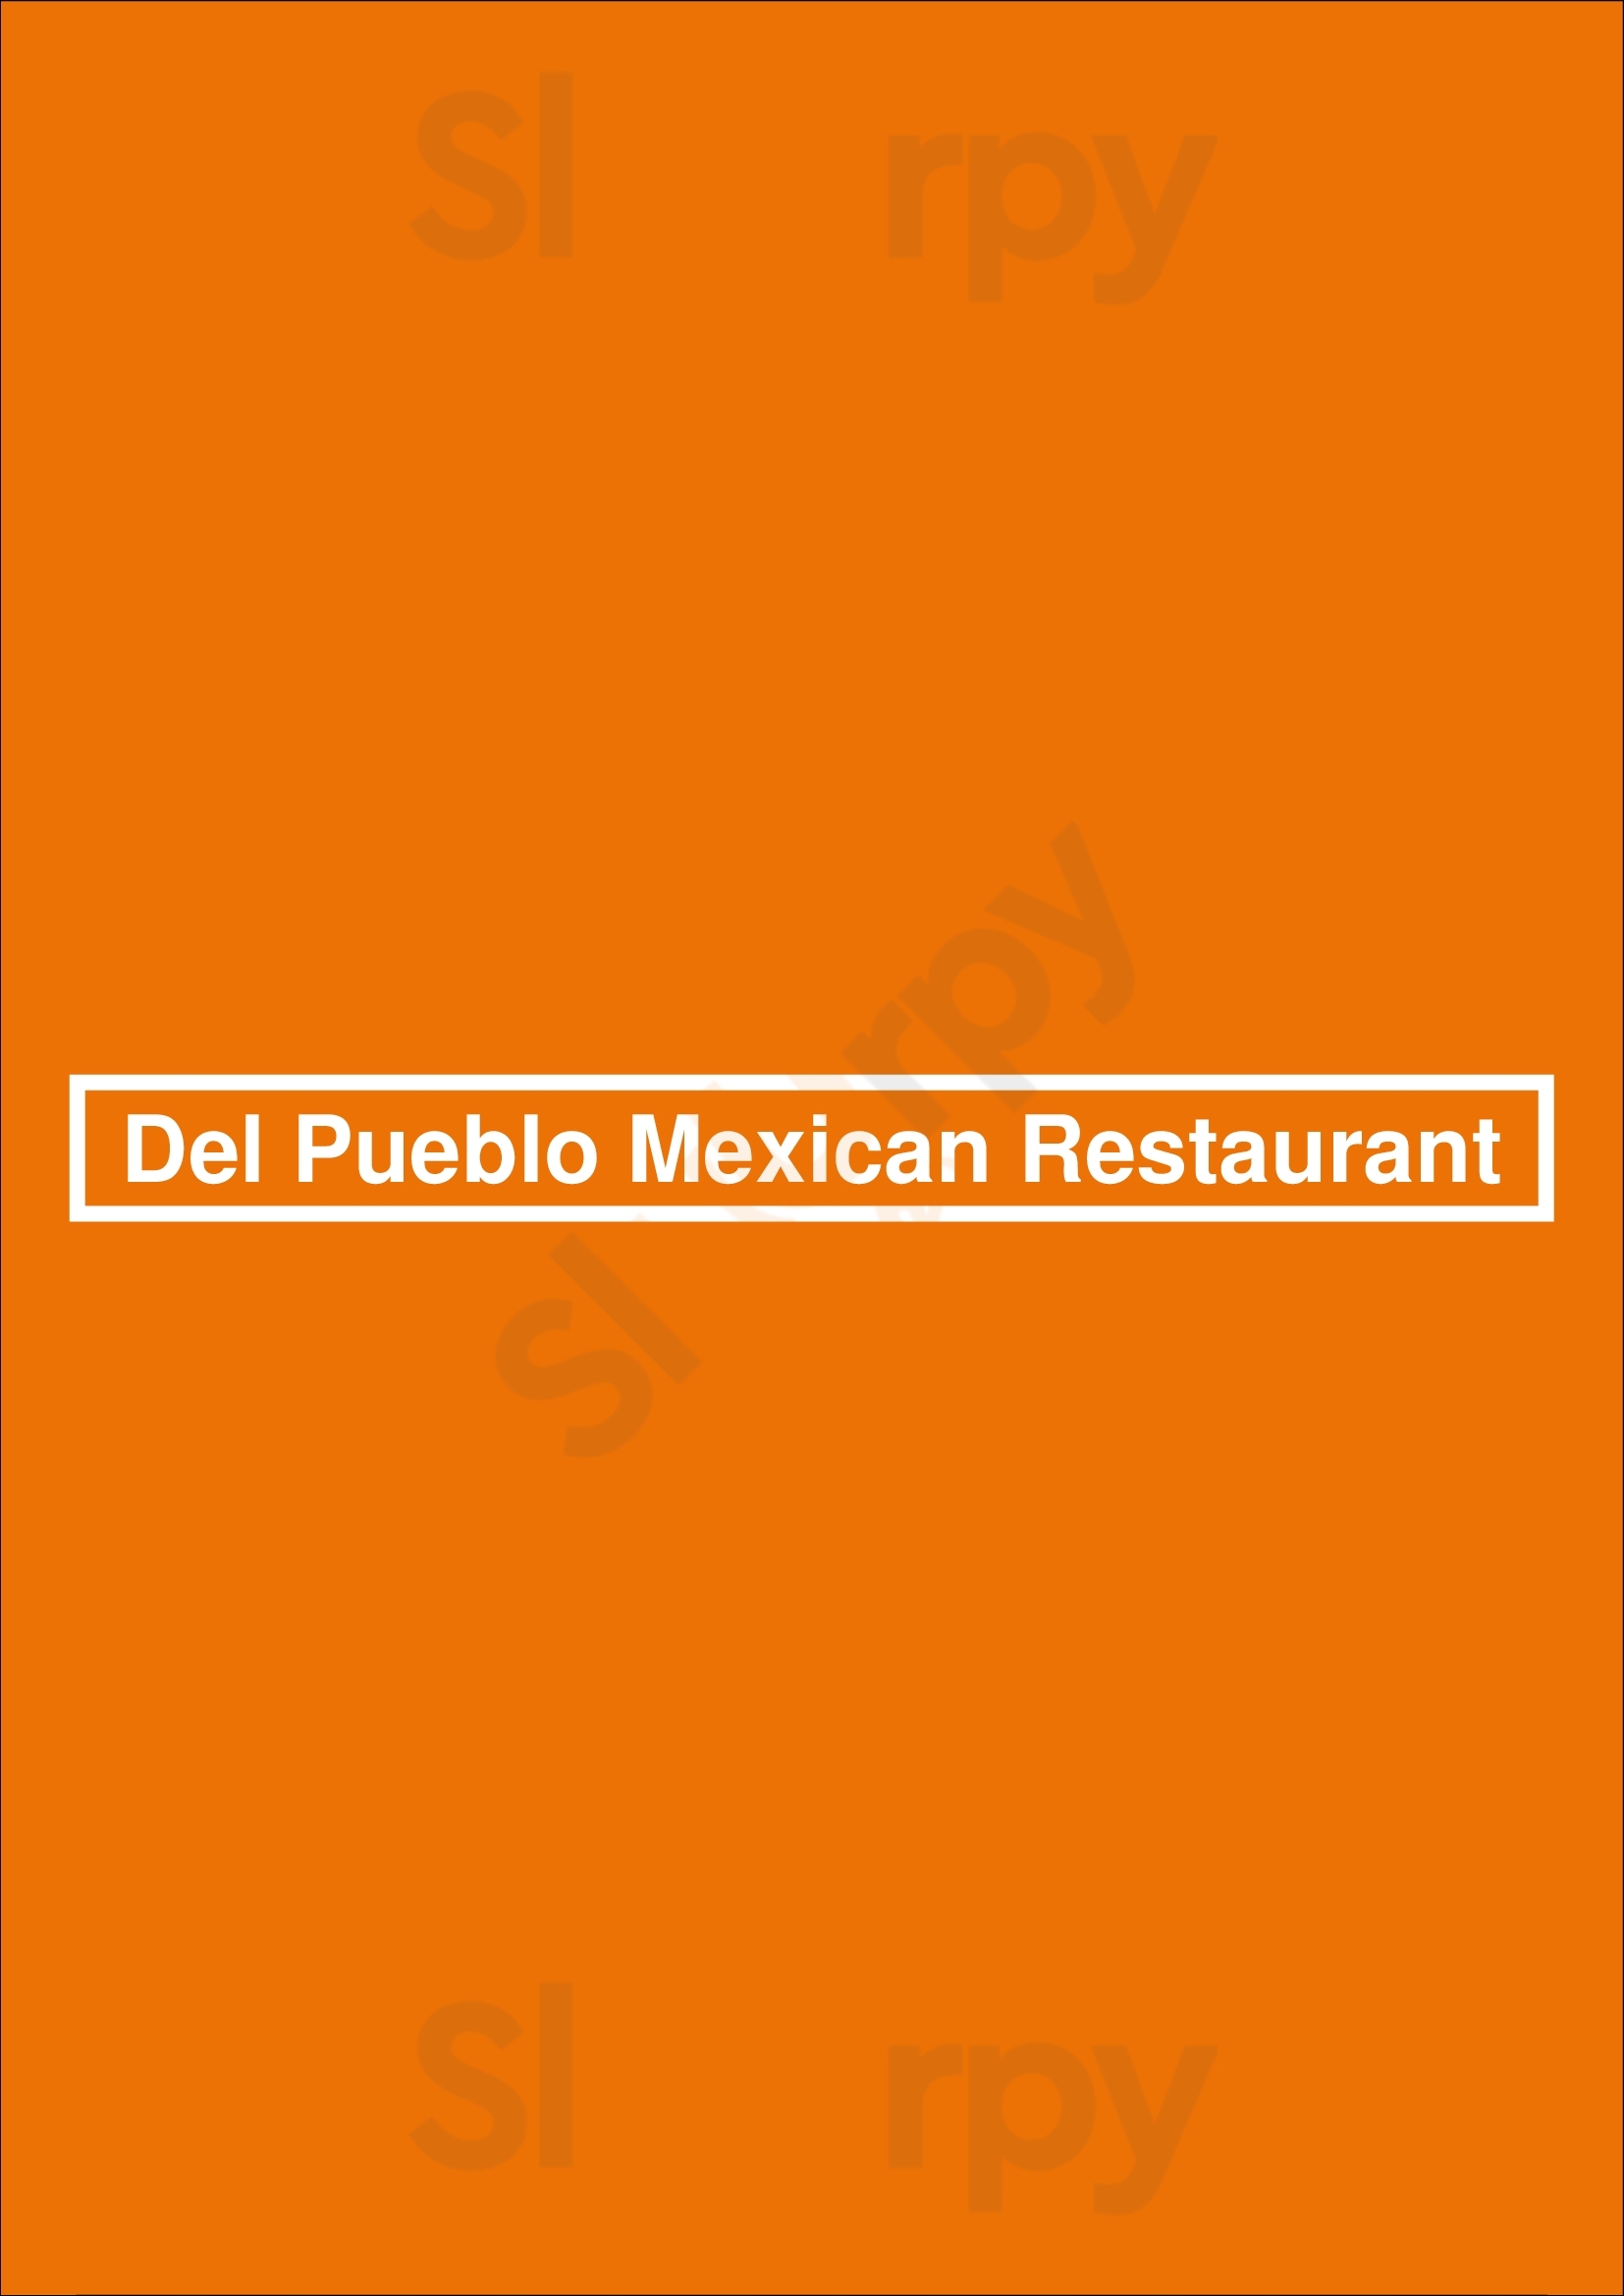 Del Pueblo Mexican Restaurant Houston Menu - 1